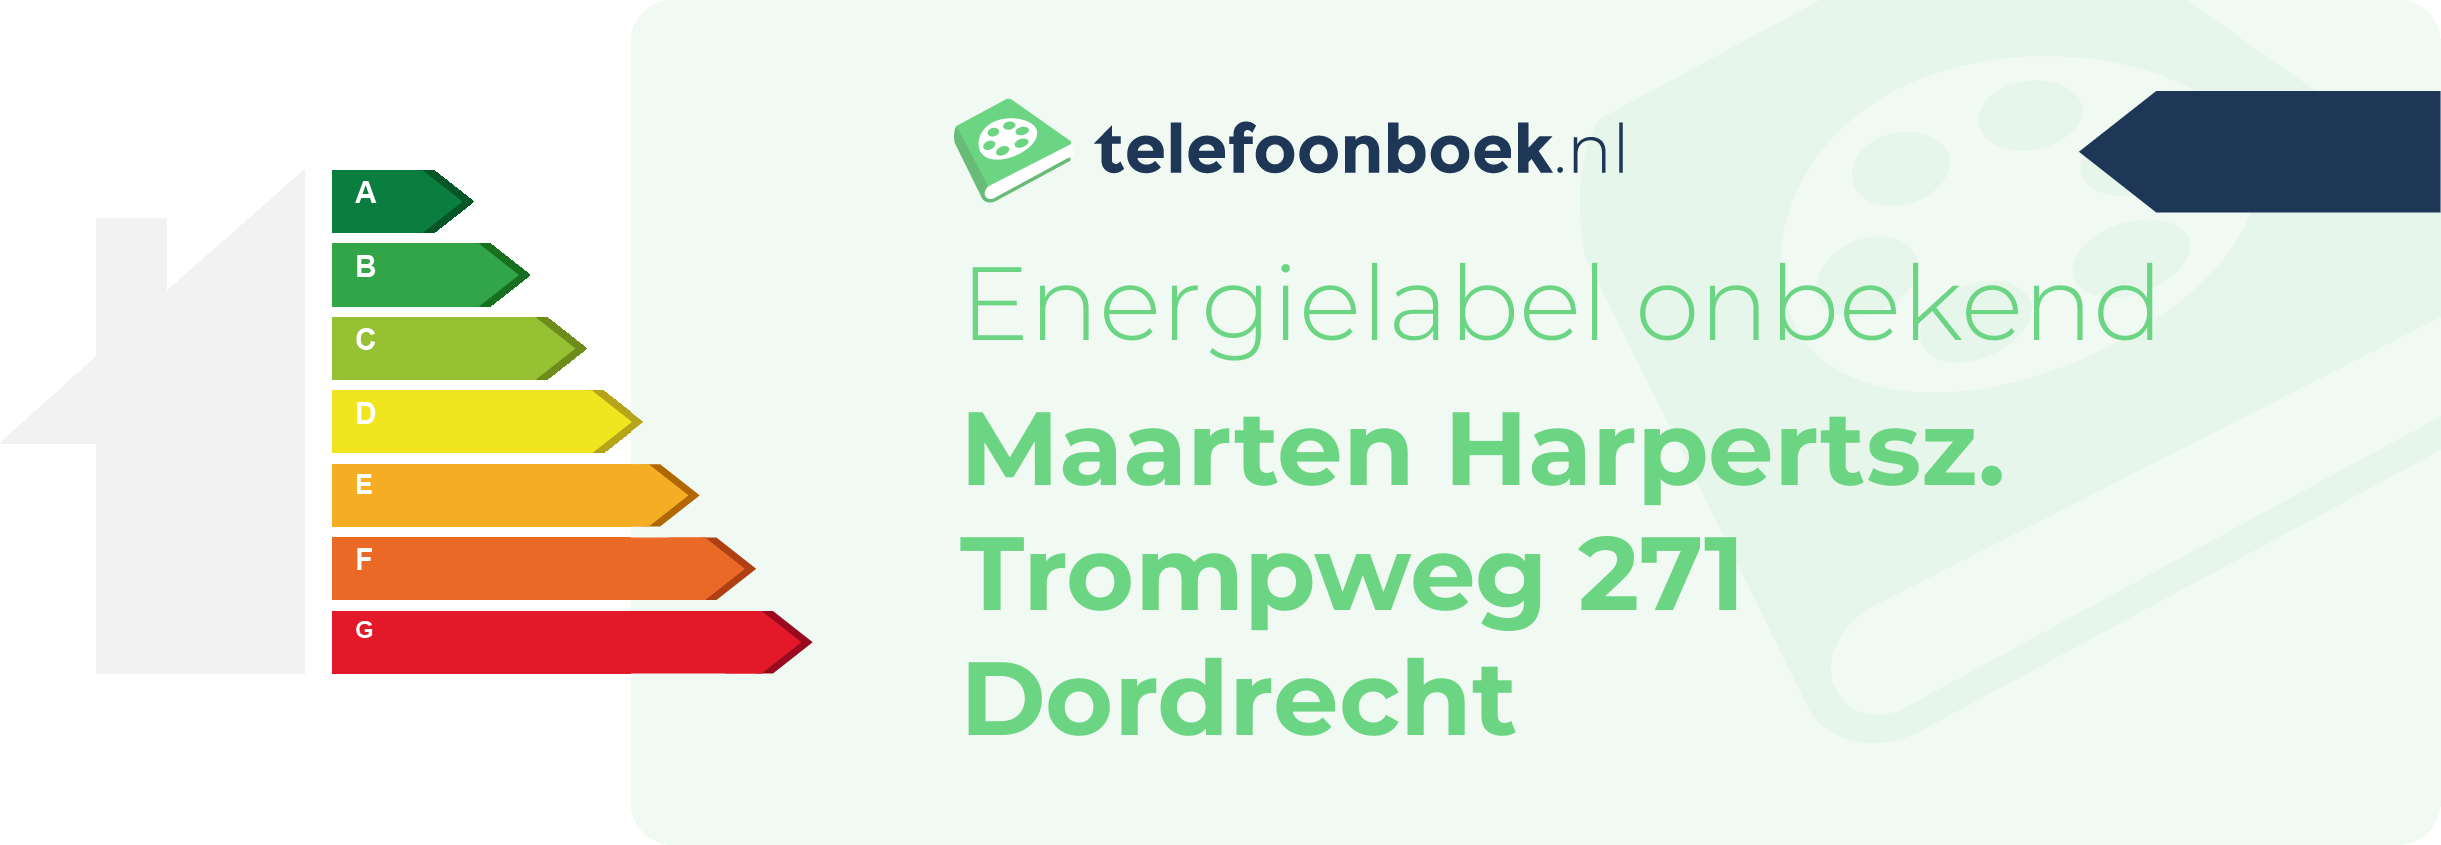 Energielabel Maarten Harpertsz. Trompweg 271 Dordrecht